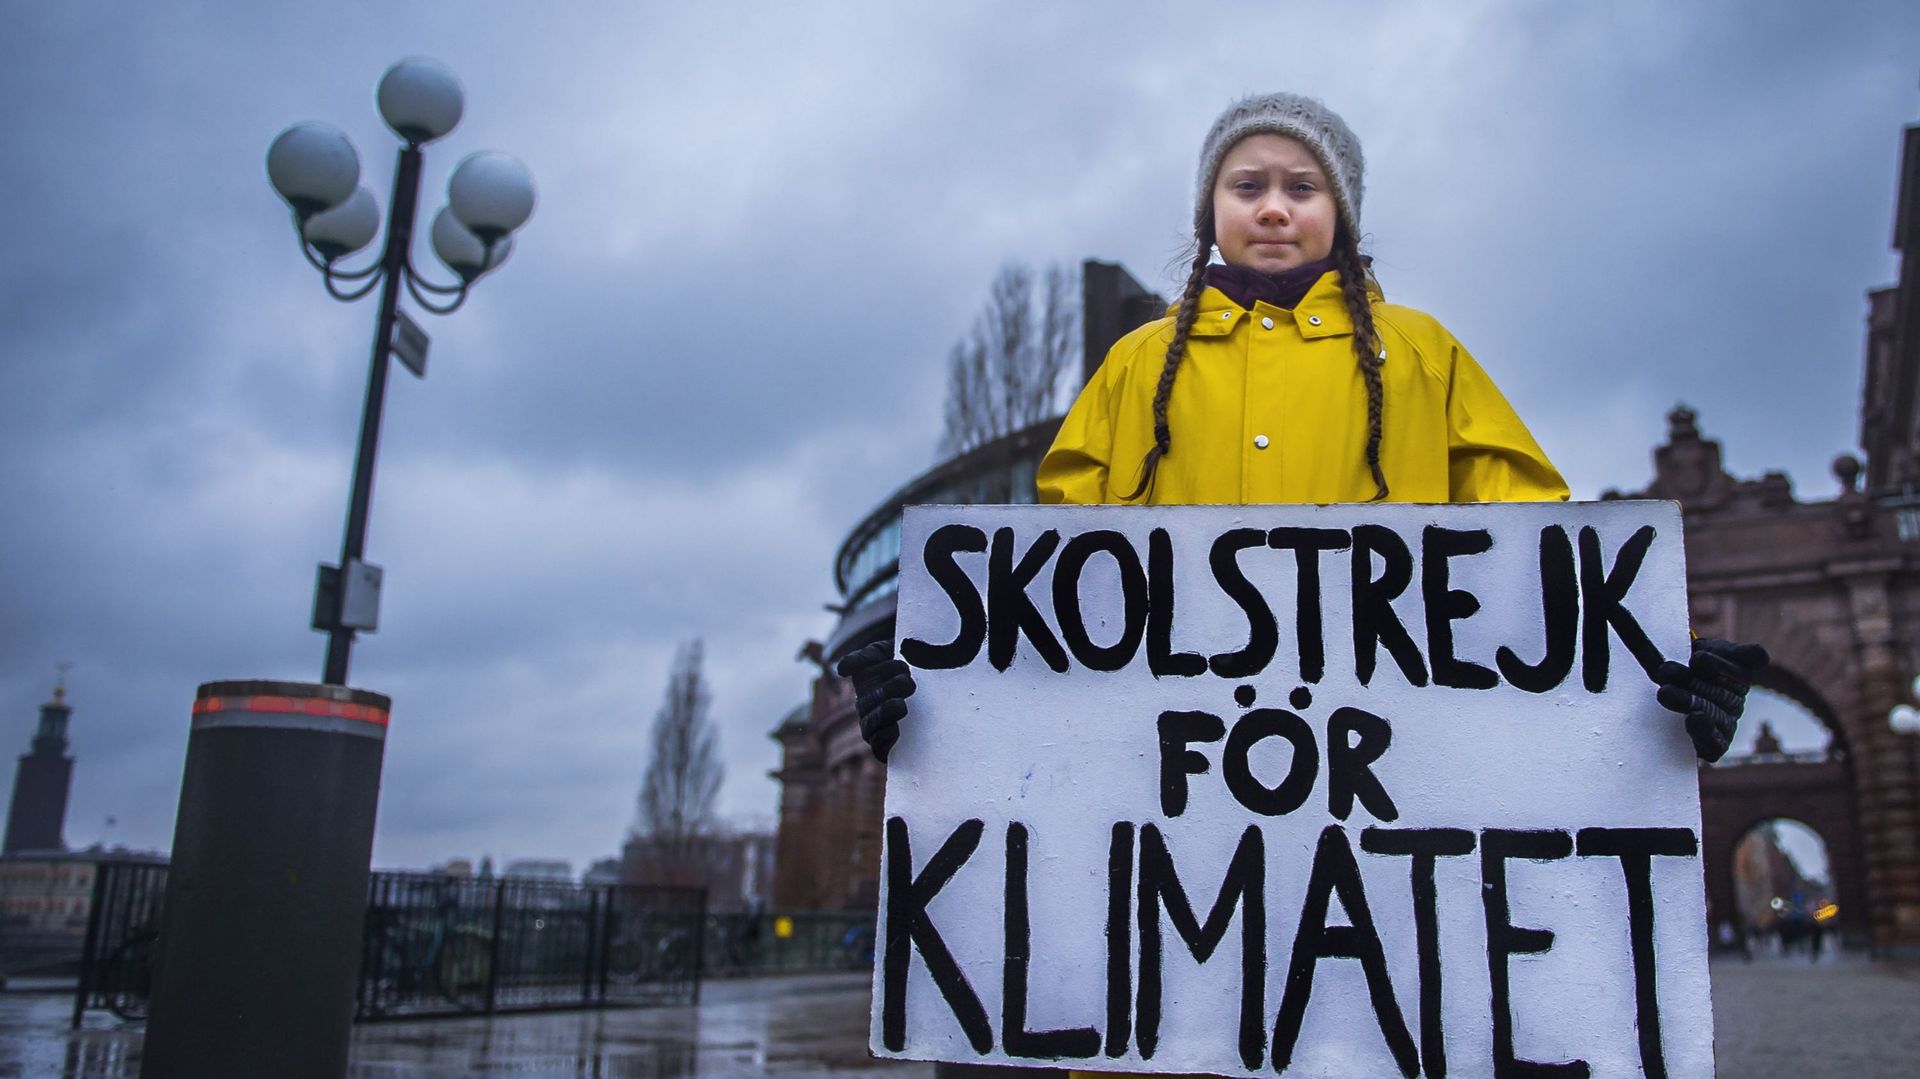 Greta Thunberg à Davos: "Je voudrais qu’ils oublient leur intérêt personnel, pour s’intéresser au climat"